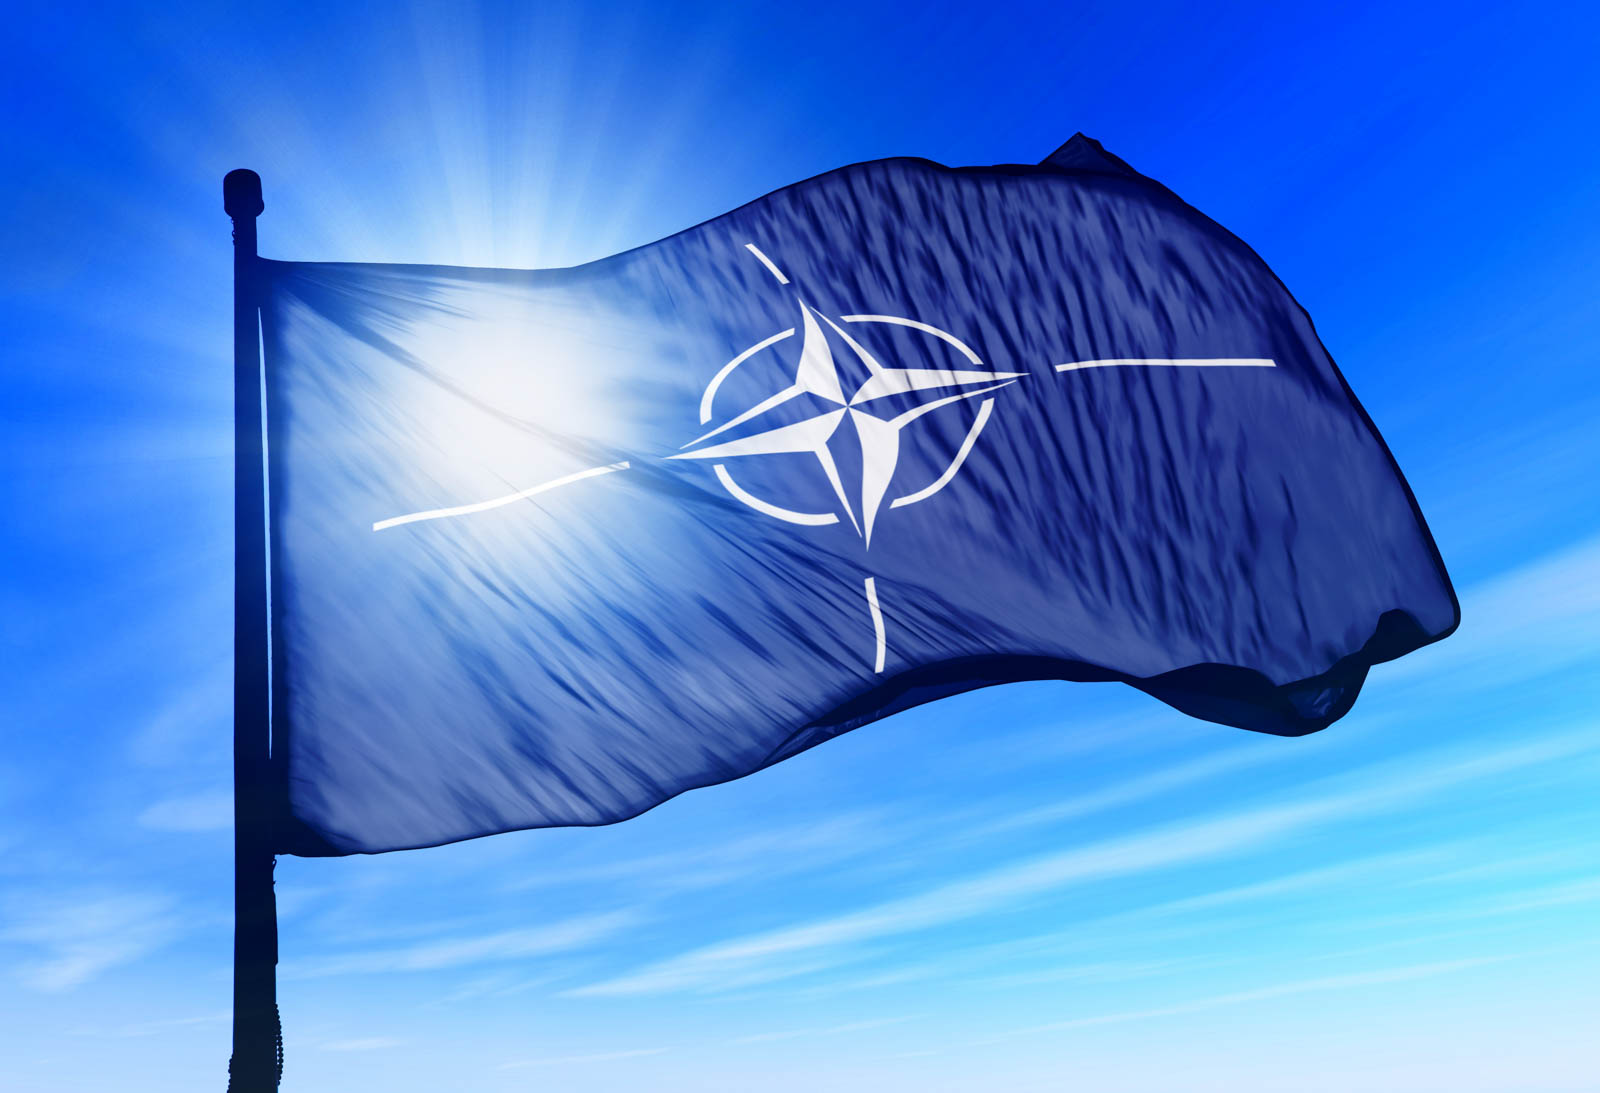 Ευλογεί το αντιρωσικό μέτωπο που ανοίγει η Τσεχία το ΝΑΤO: «Στηρίζουμε τις έρευνες ενάντια στις “μοχθηρές ενέργειες”»